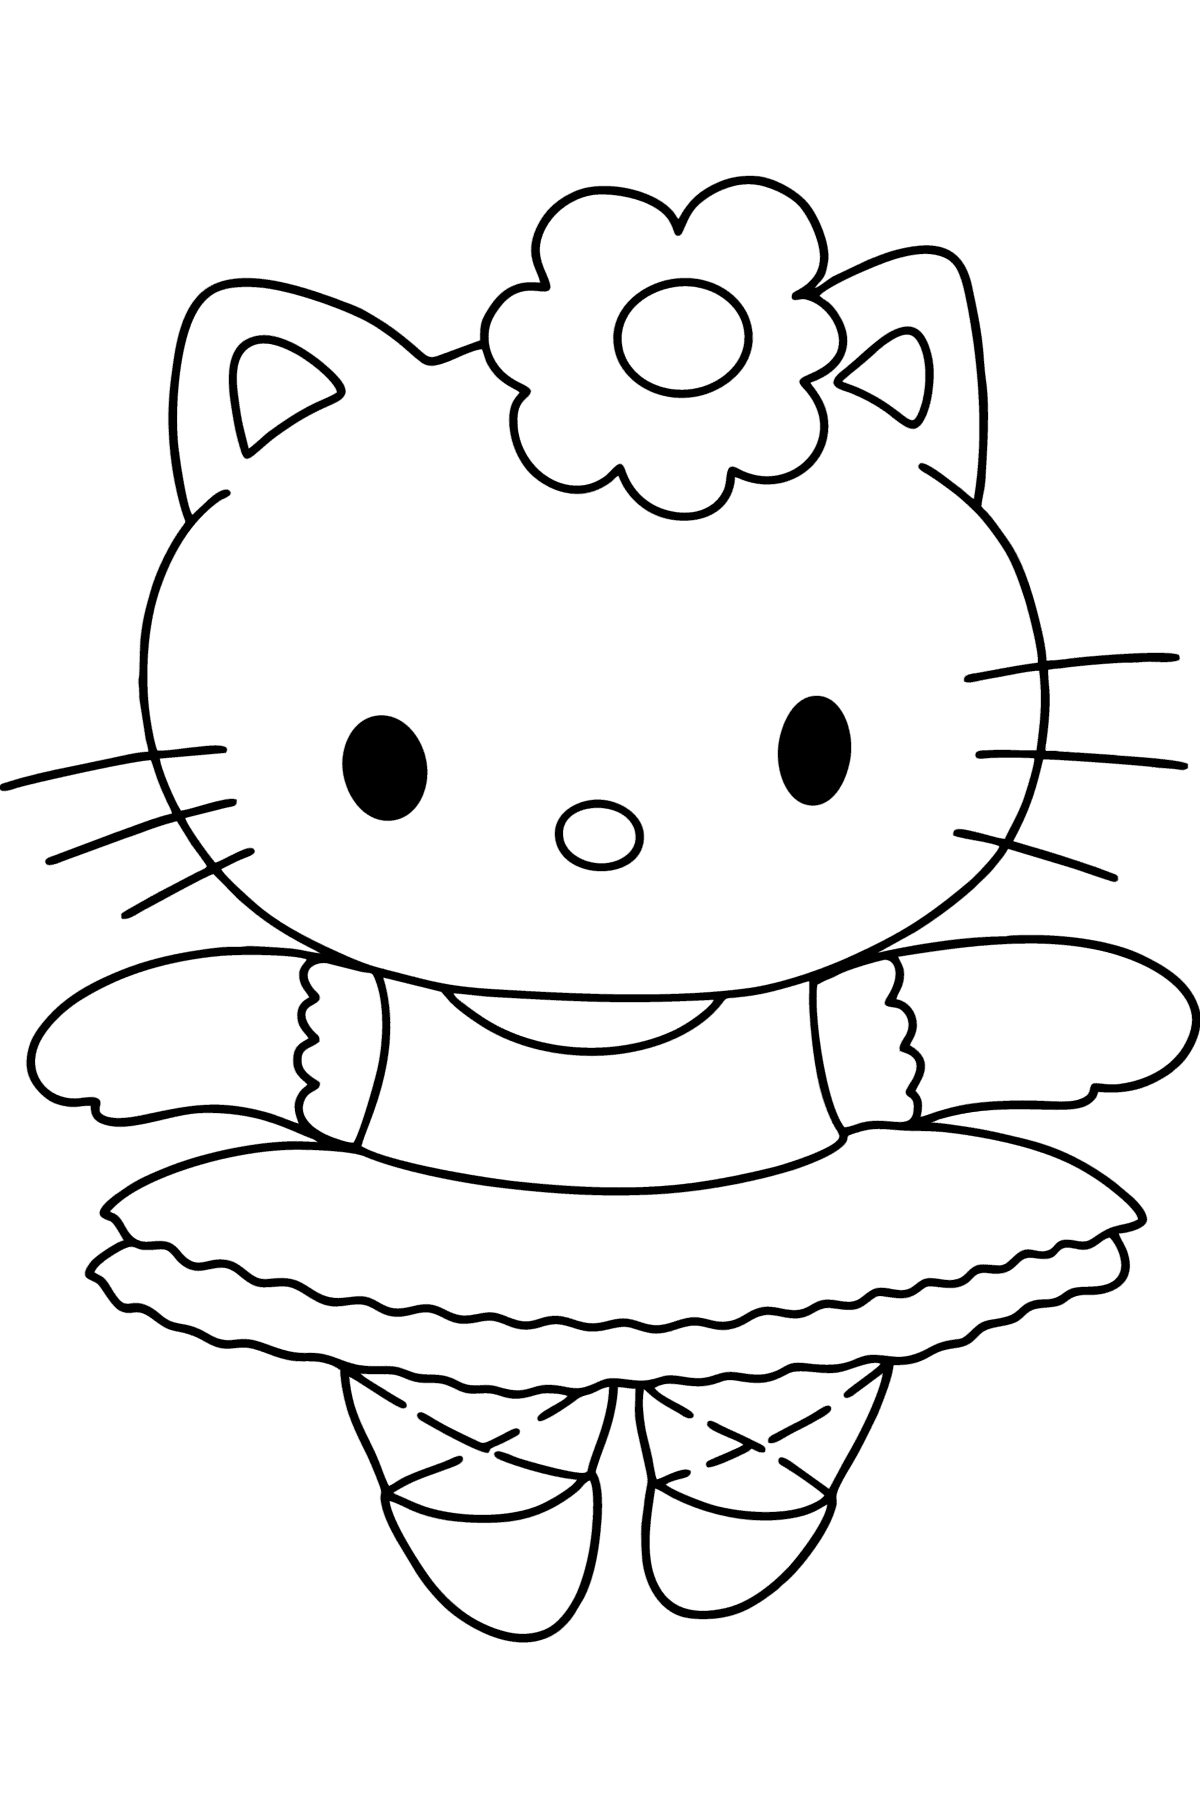 Tegning til fargelegging Hello Kitty ballerina - Tegninger til fargelegging for barn